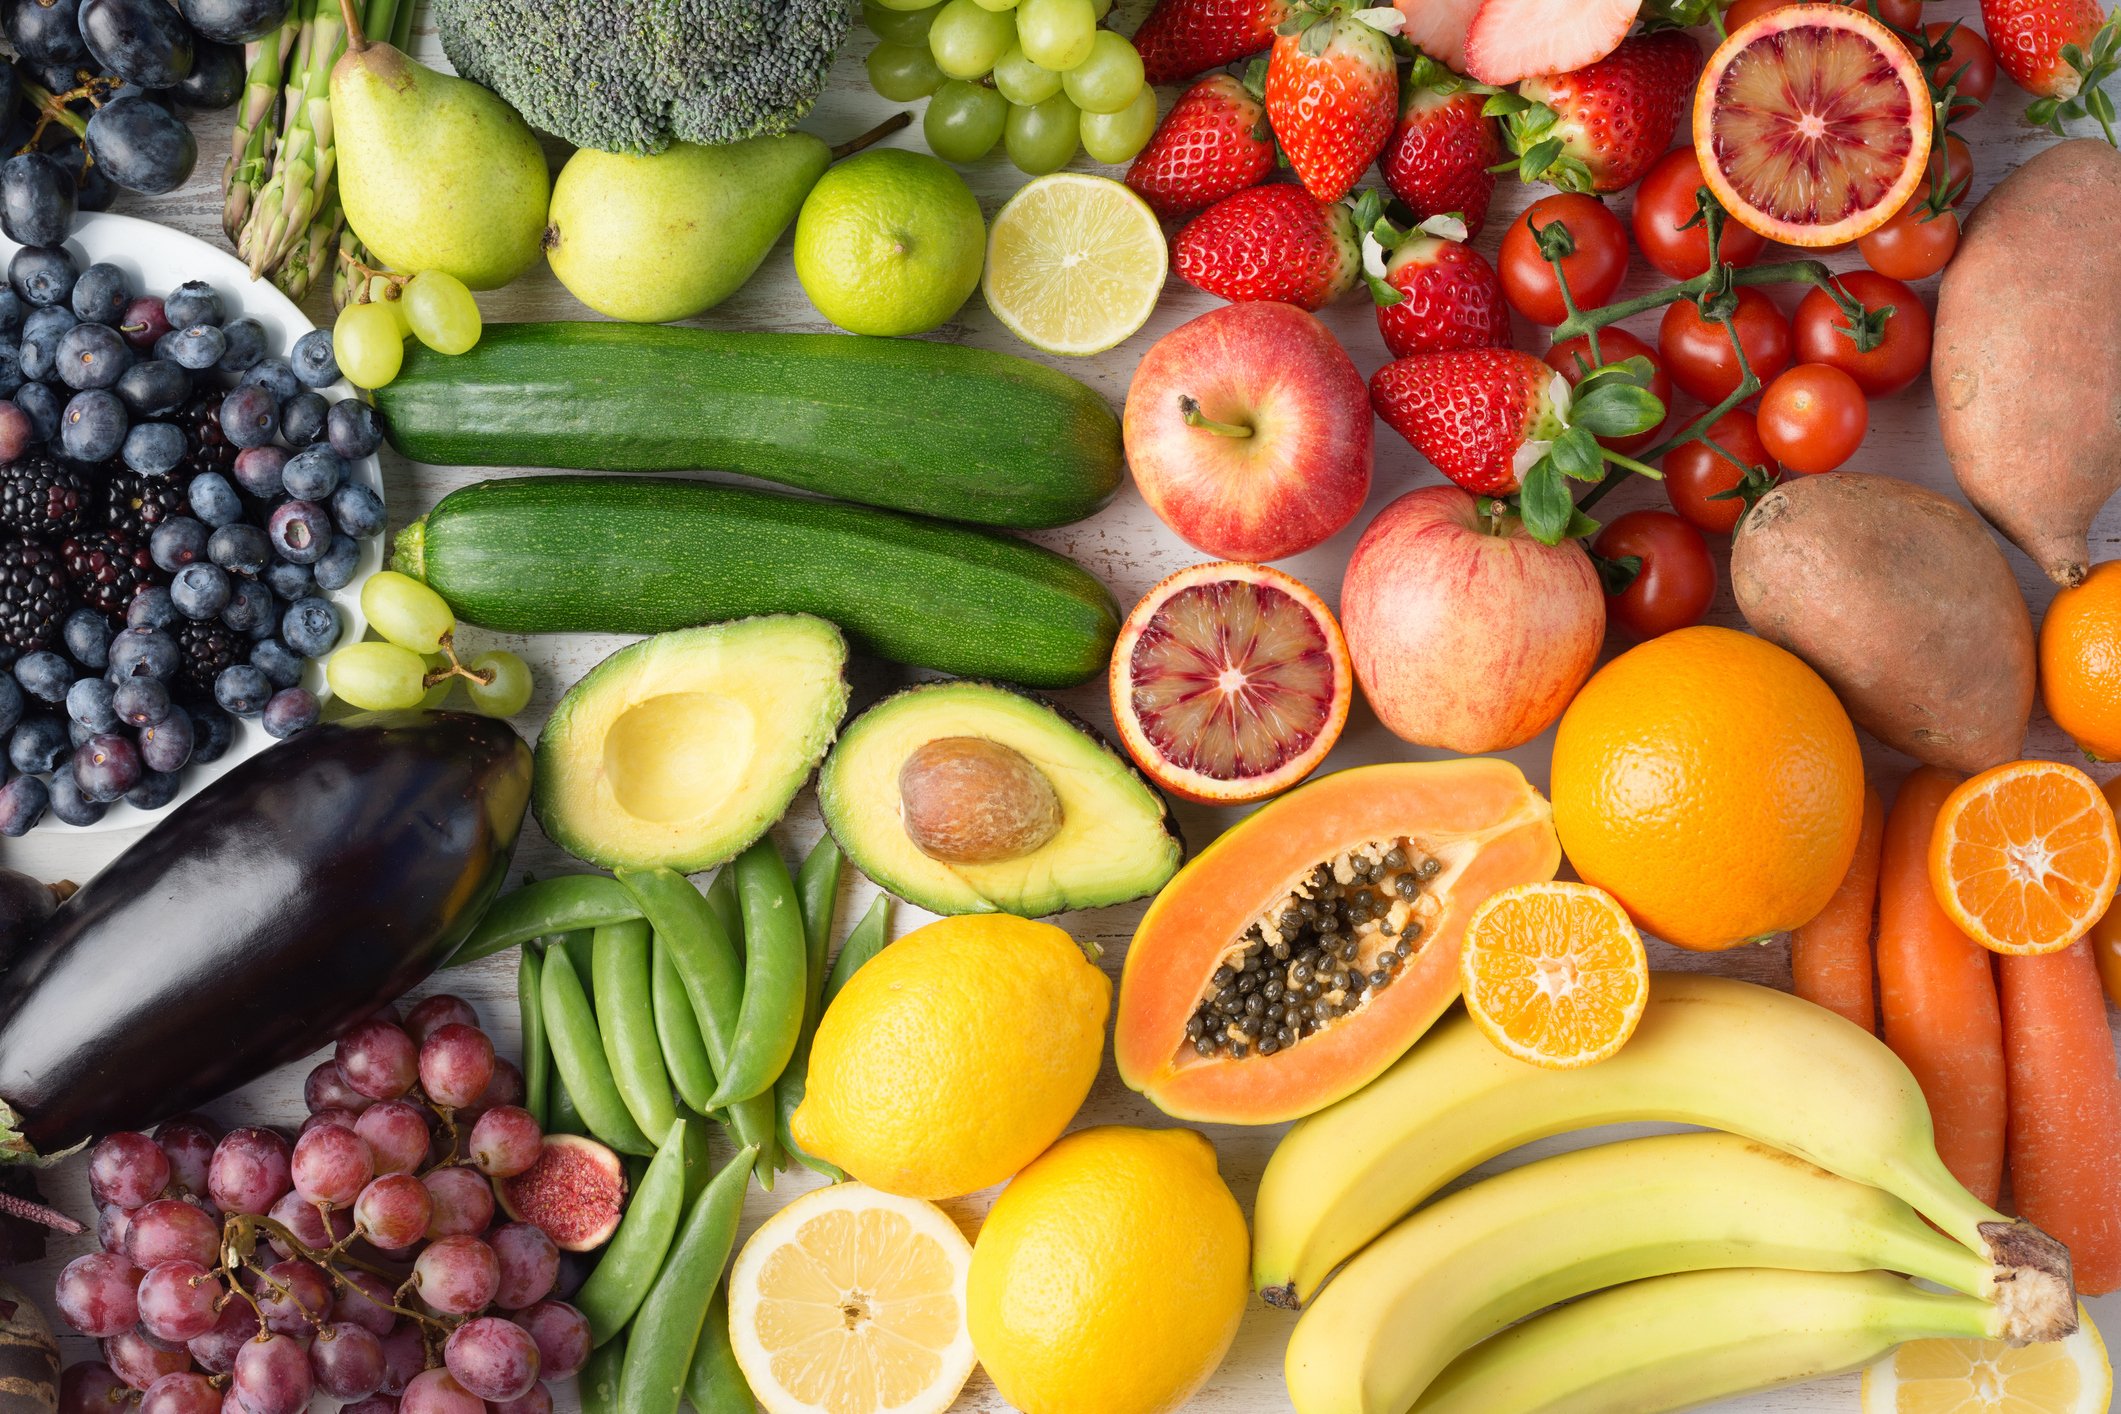 Hoa quả, trái cây là một trong những thực phẩm giảm cân lý tưởng